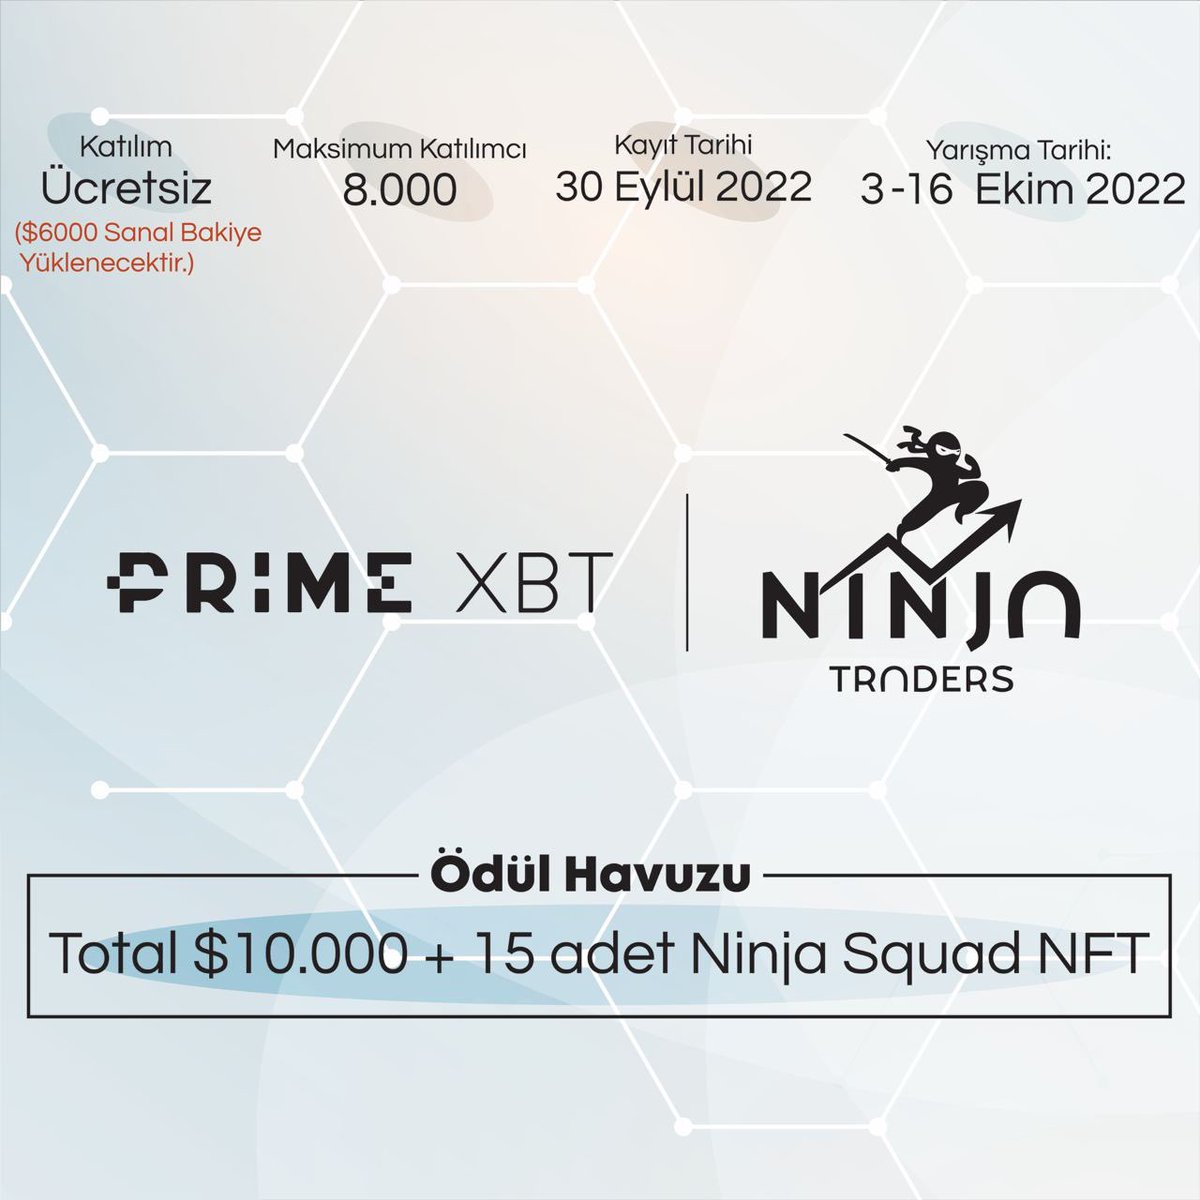 Sevgili Ninjalar, Sizler için PARA YATIRMADAN katılabileceğiniz bir trade yarışması anlaşması yaptığımızı duyurmak istiyoruz. PrimeXBT borsasının düzenlediği yarışmada yarışmacılara $6000 sanal bakiye yüklenecektir.